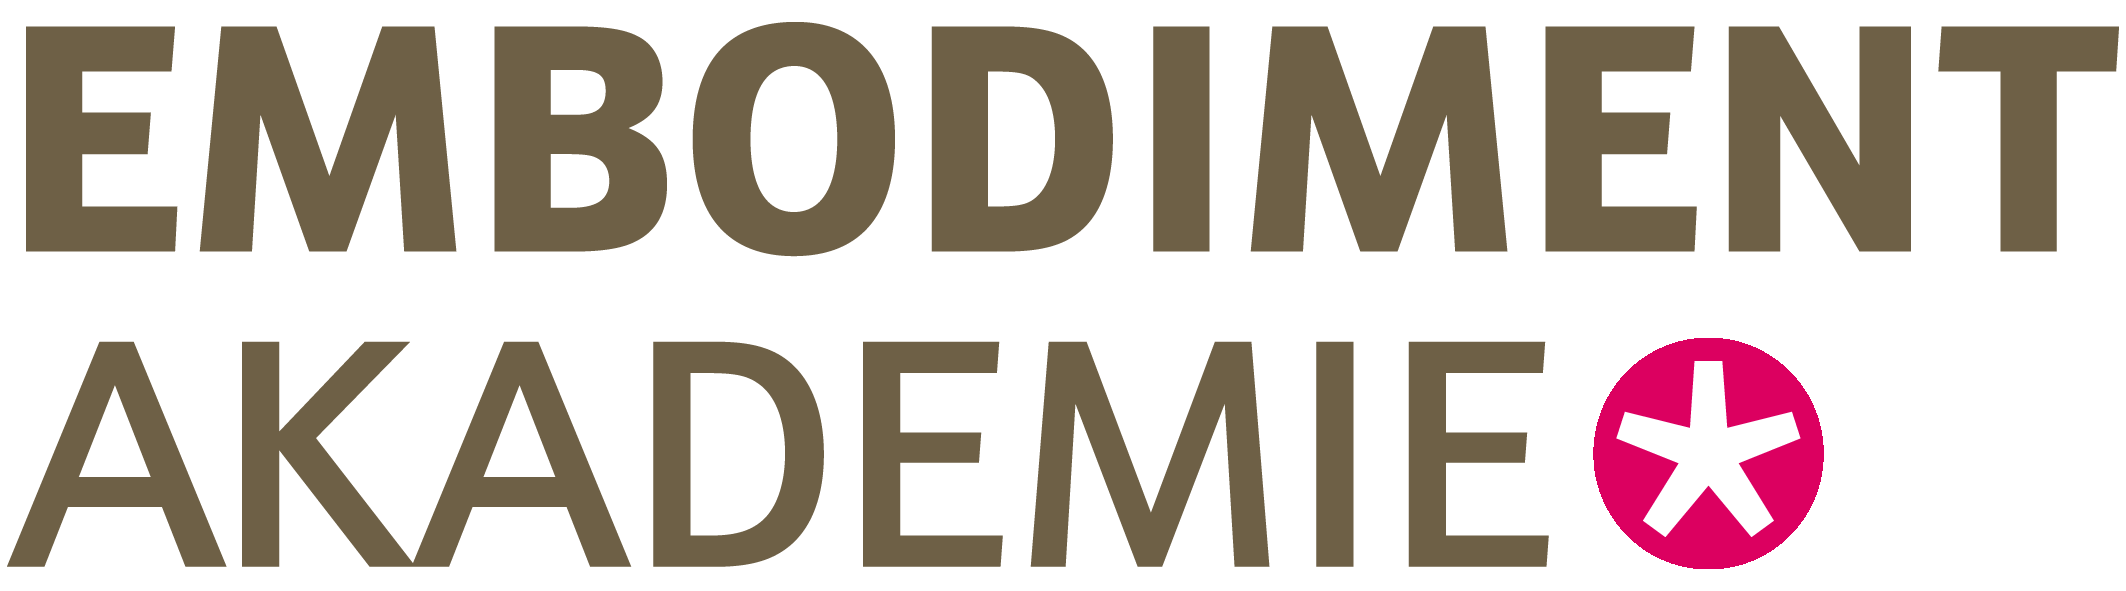 Embodiment-Akademie